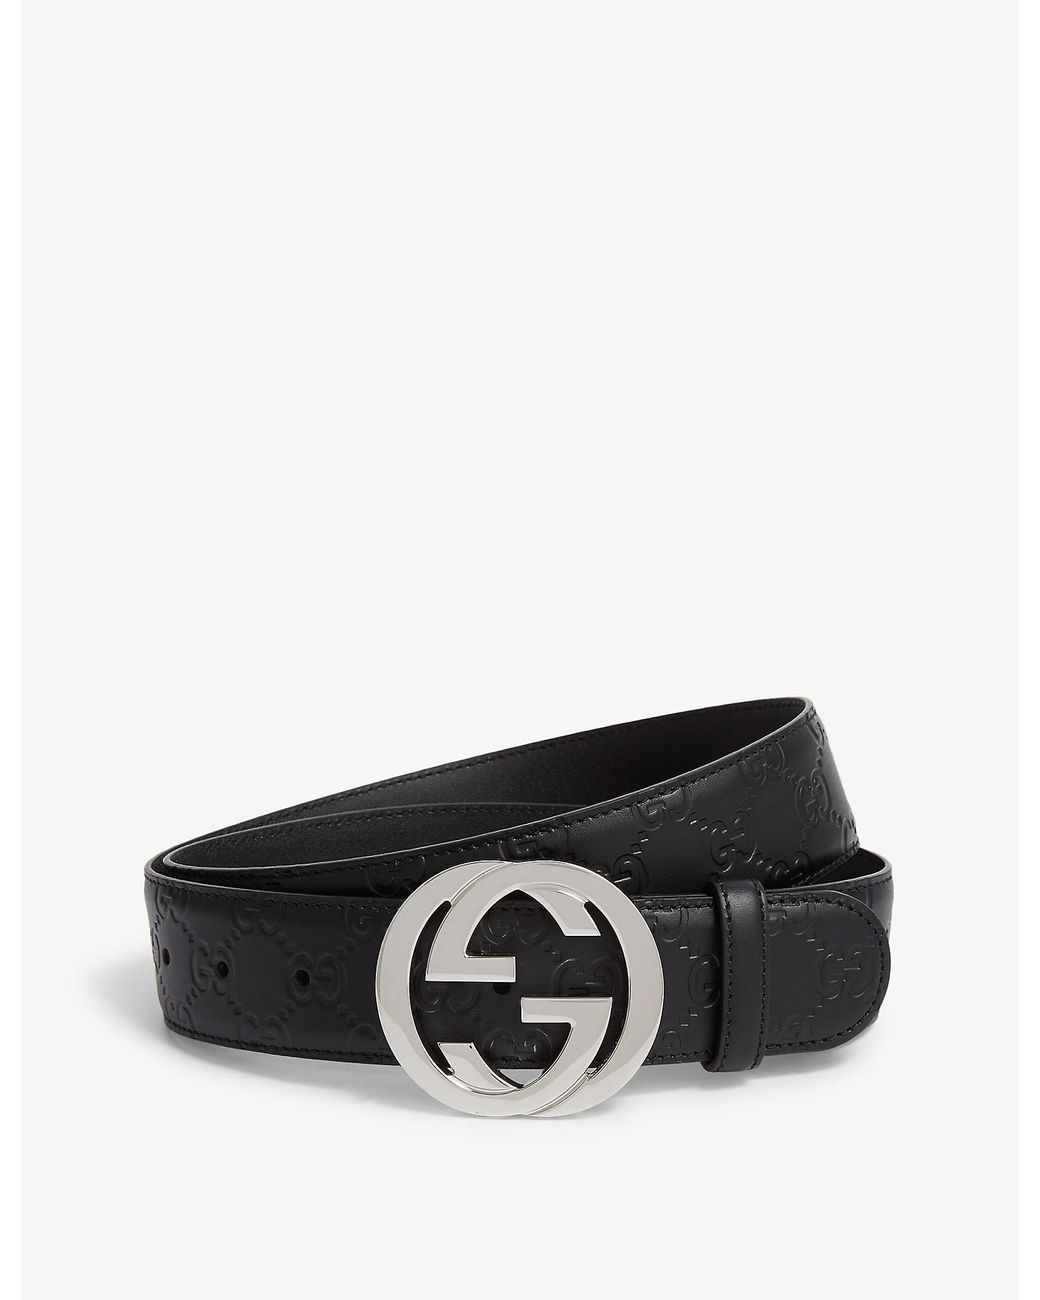 Gucci Leather Logo Belt in Black for Men - Lyst